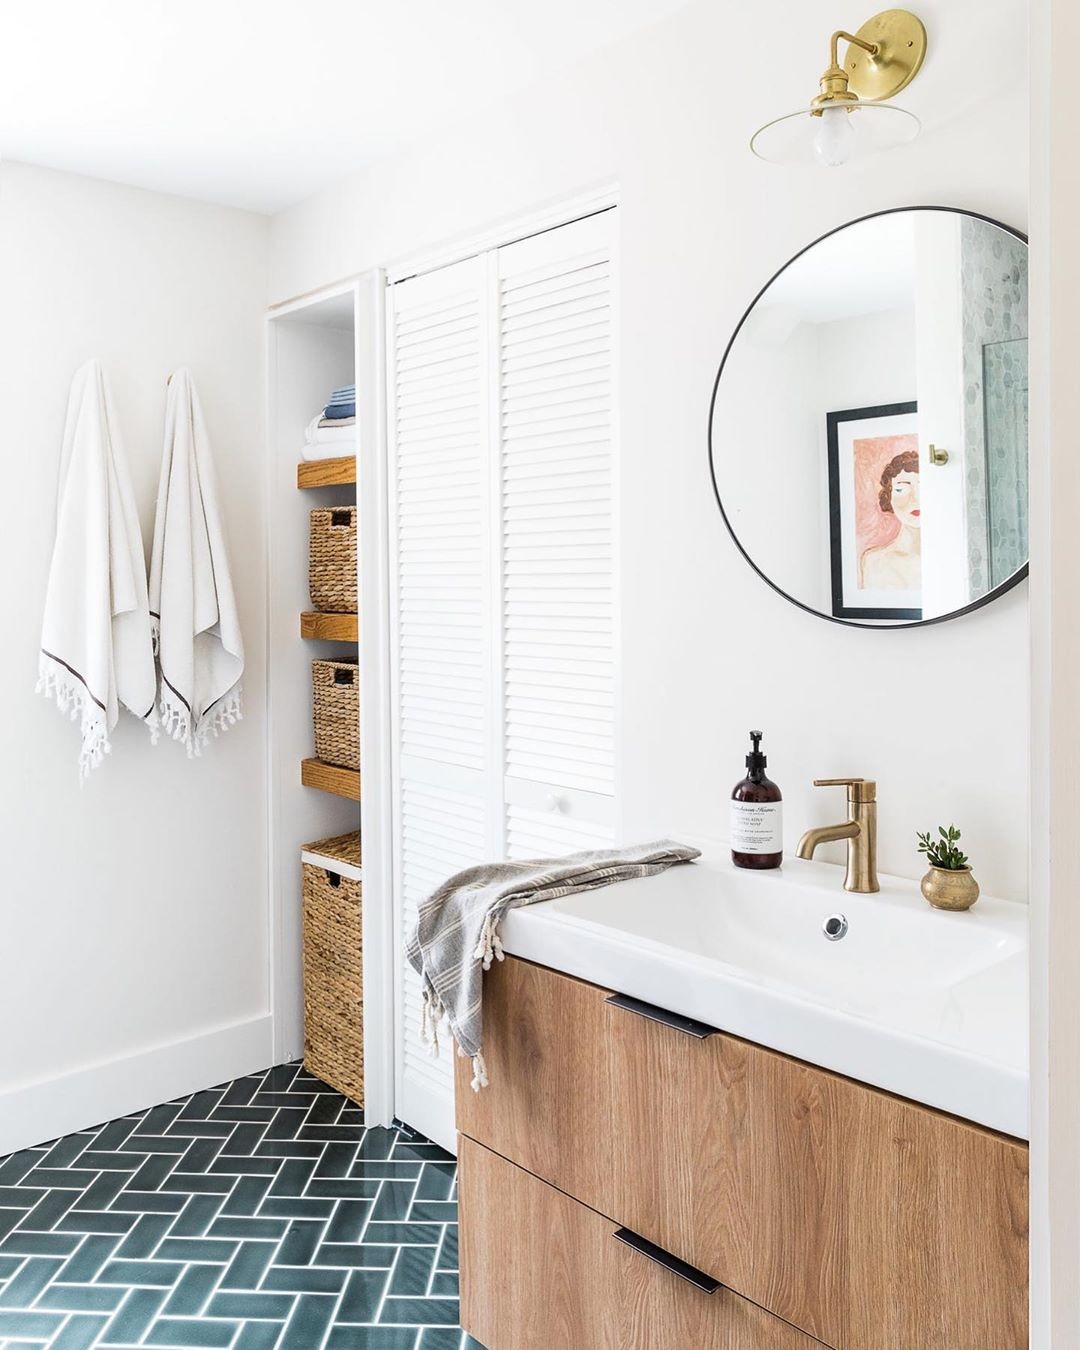 Décor do dia: banheiro minimalista com tudo no lugar (Foto: Reprodução/Instagram)